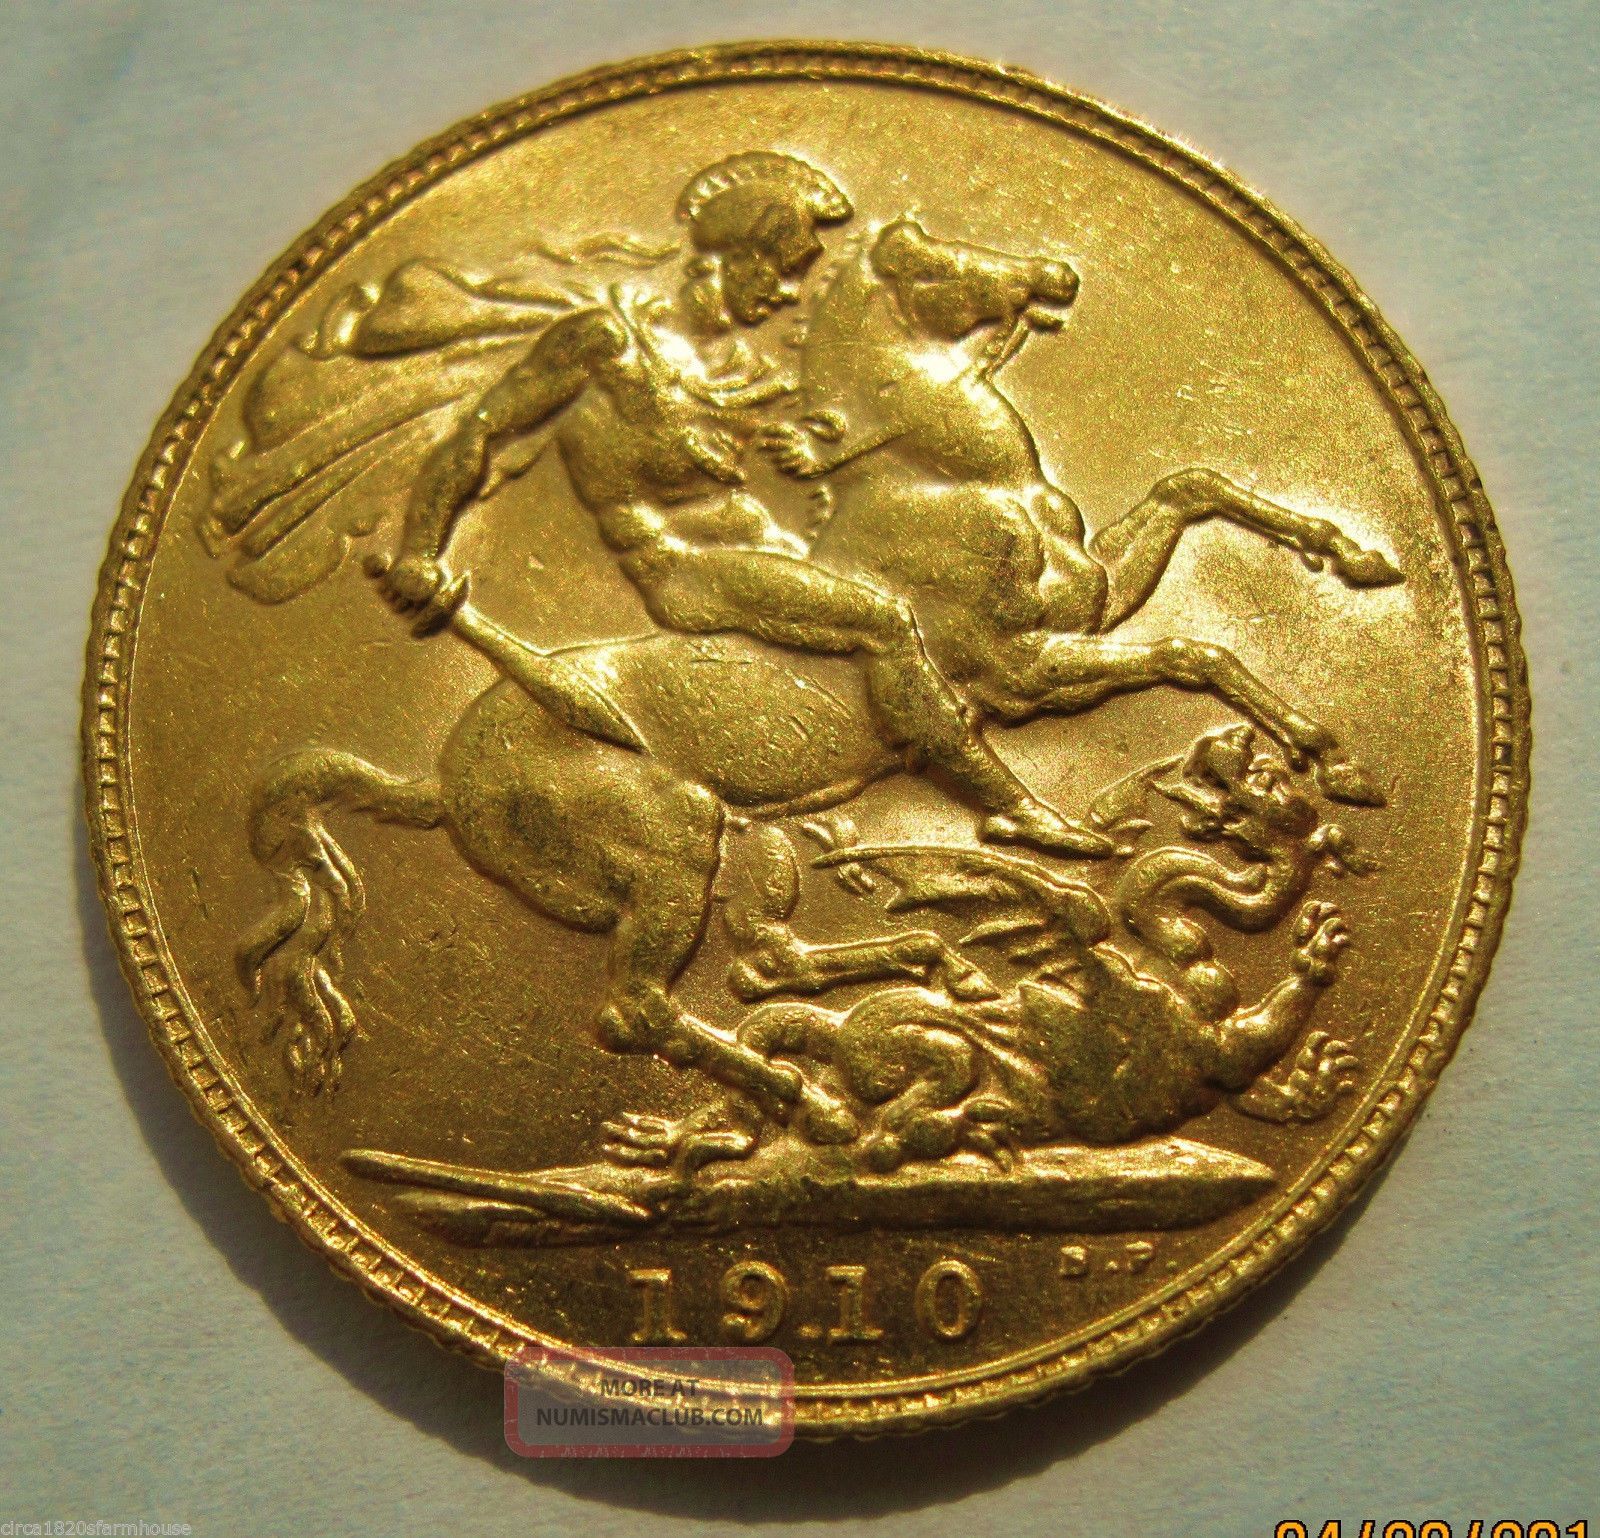 1910 gold sovereign coin